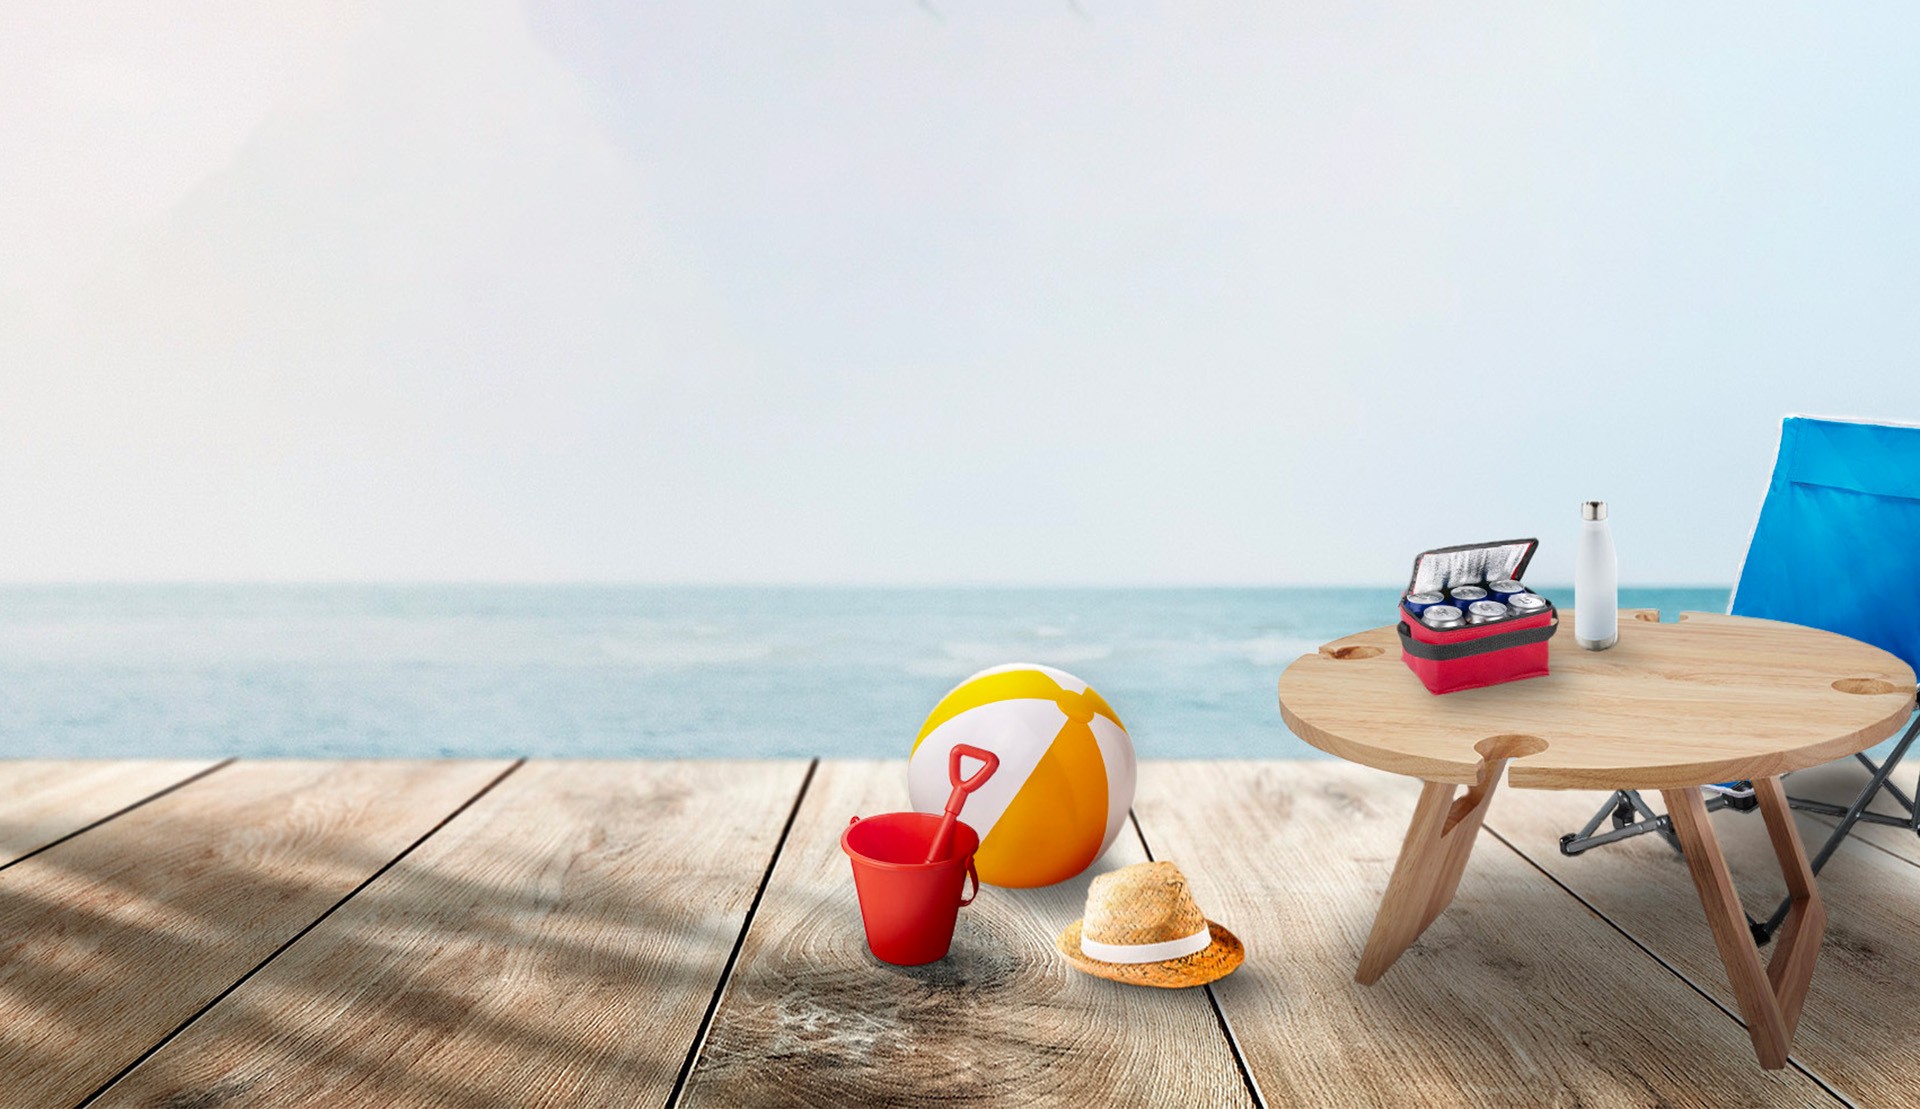 Découvrez les objets publicitaires qui feront briller votre marque sous le soleil estival !